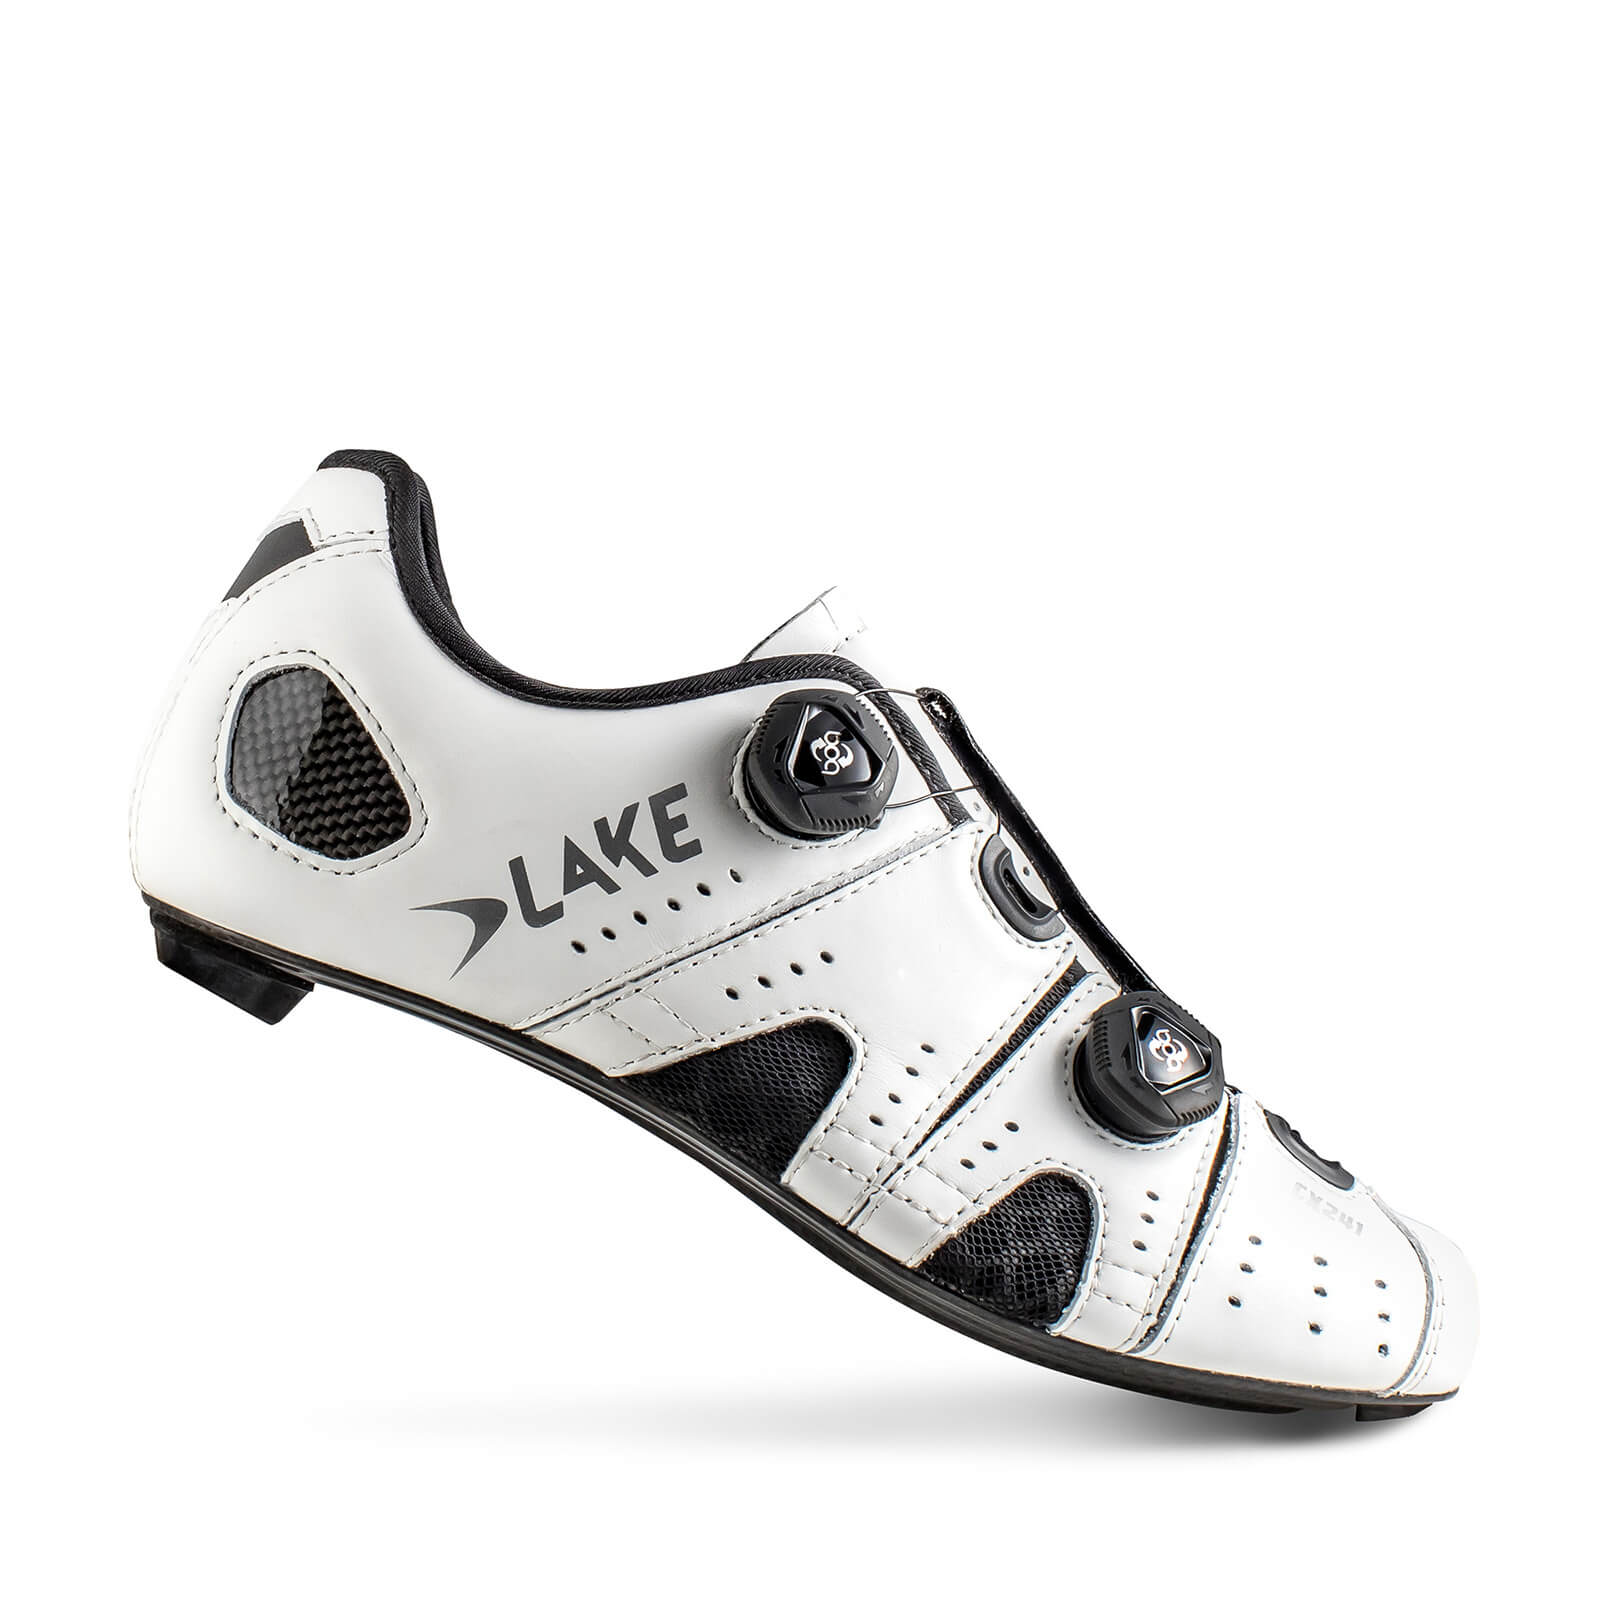 Lake CX241 Road Shoes - EU45 - White